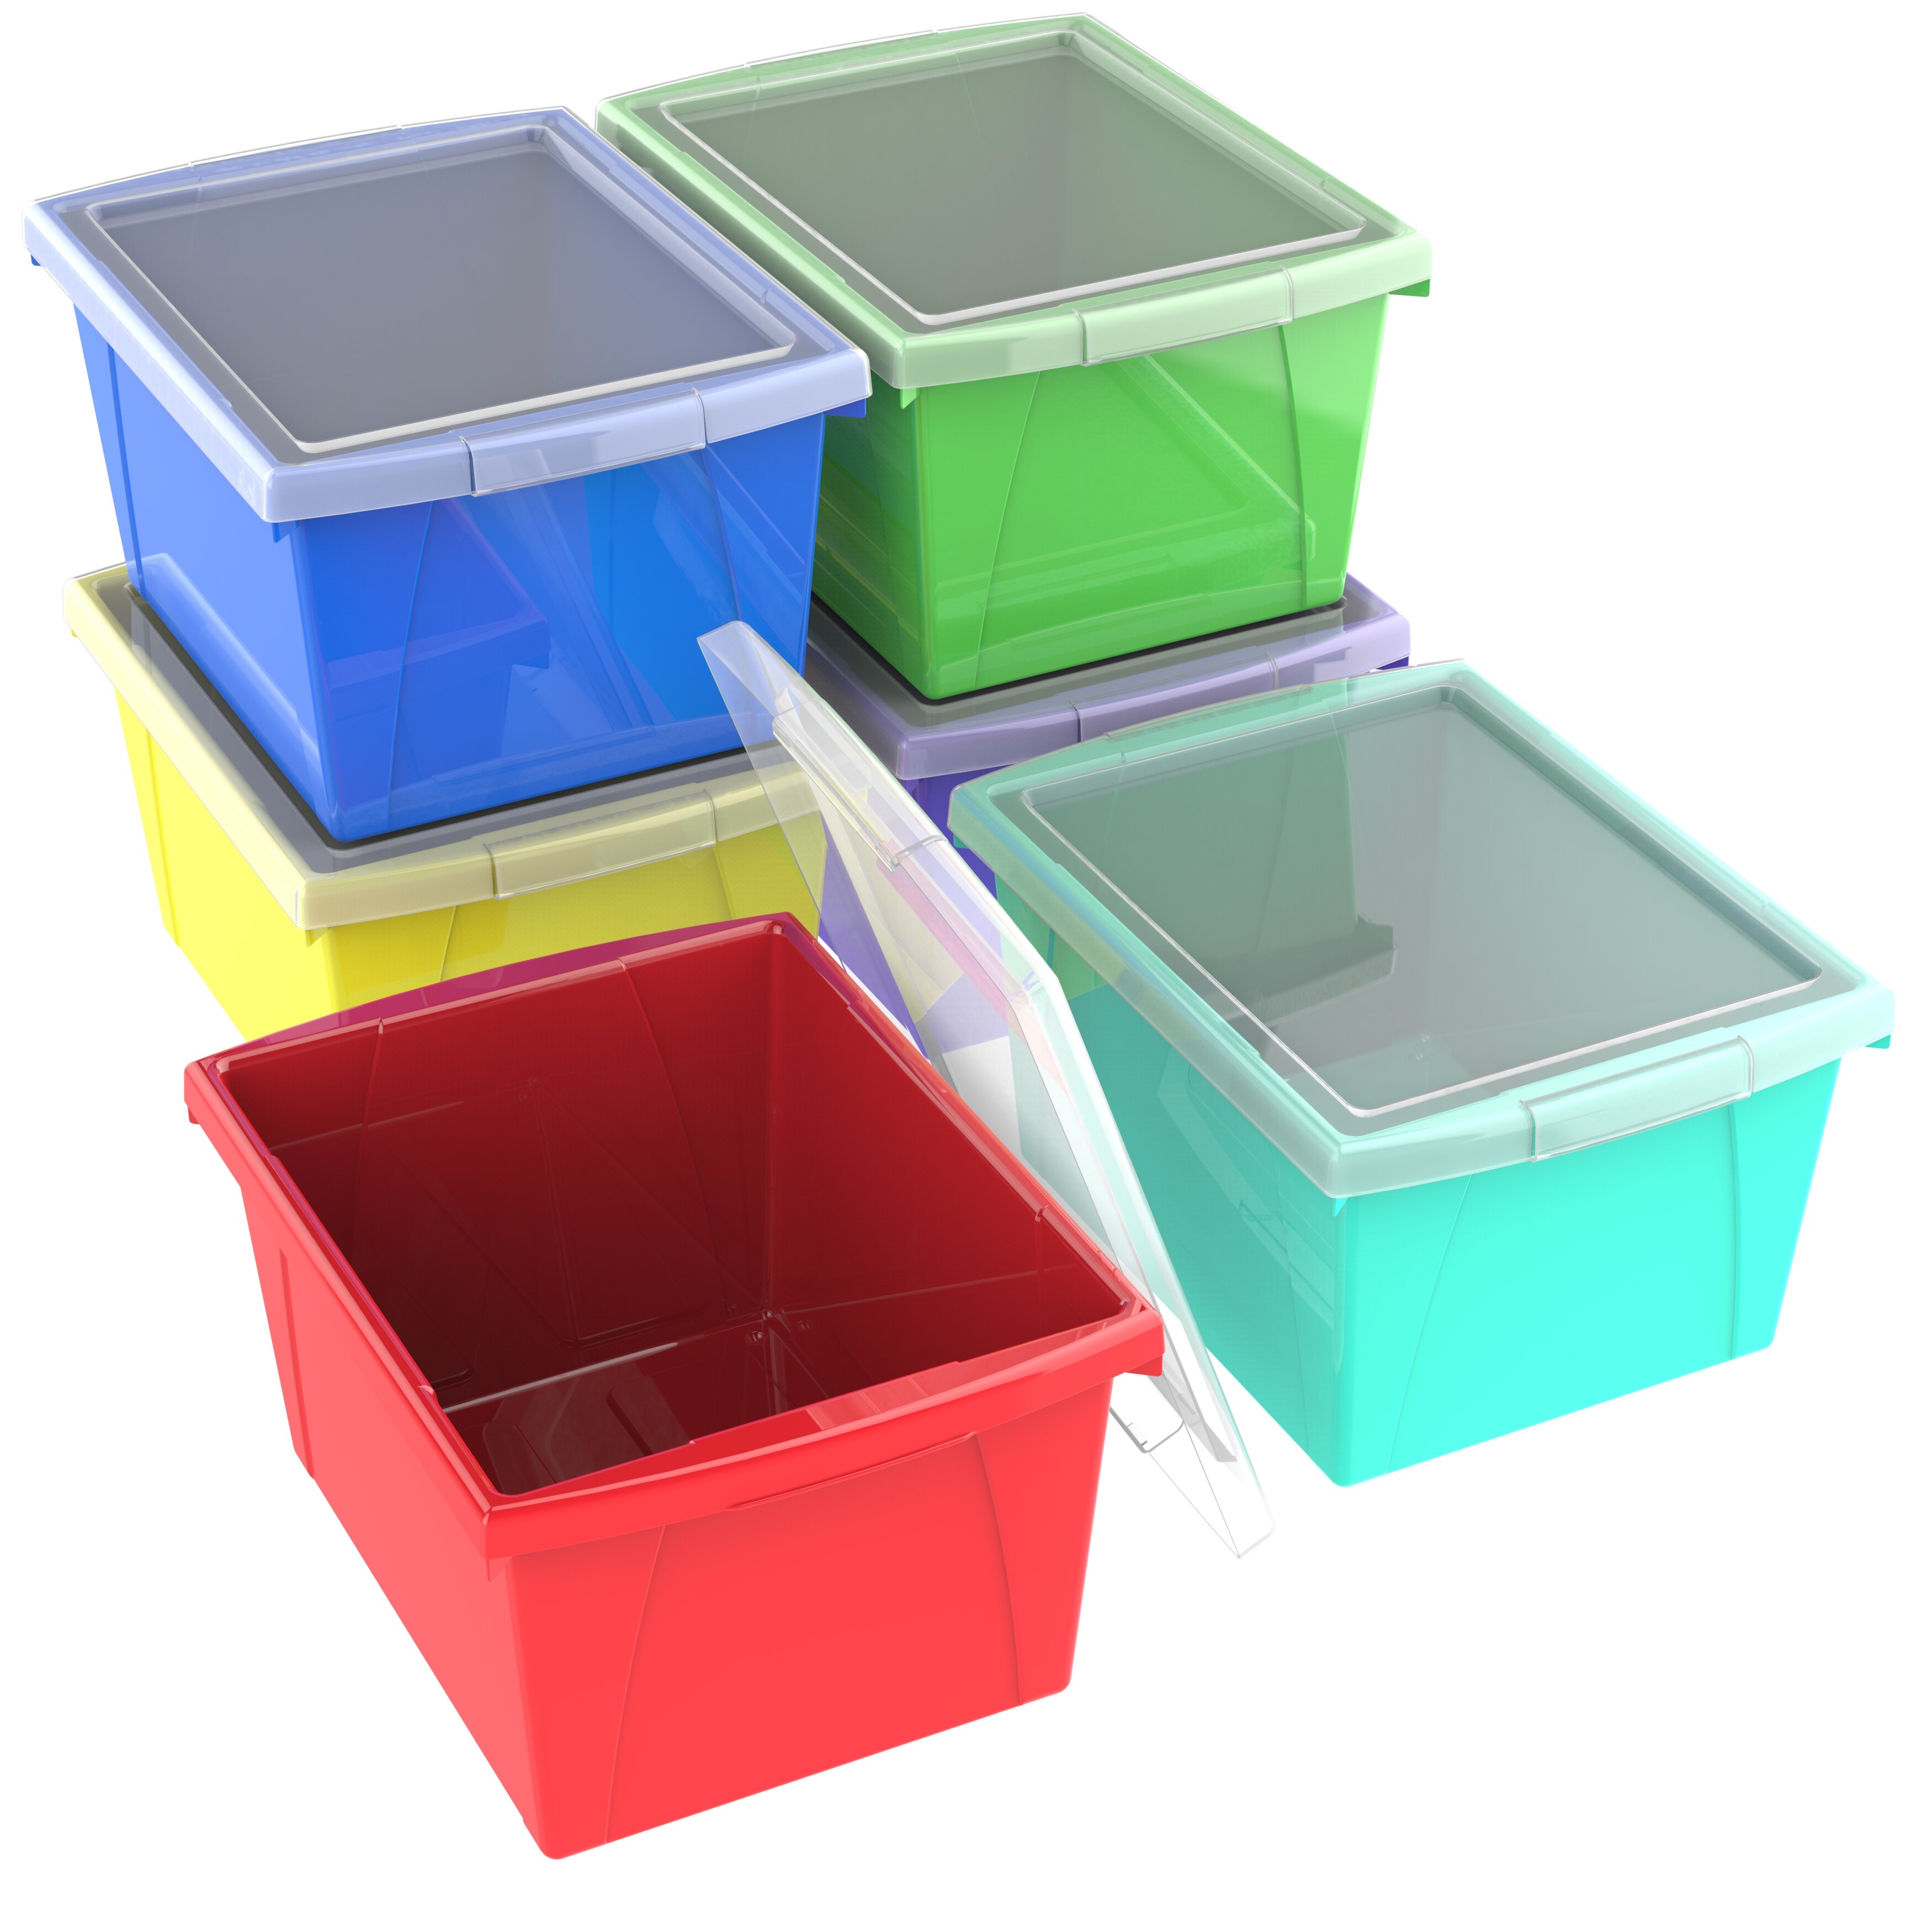  Storex Stackable Craft Box Storage Bin, 3 x 14 x 14